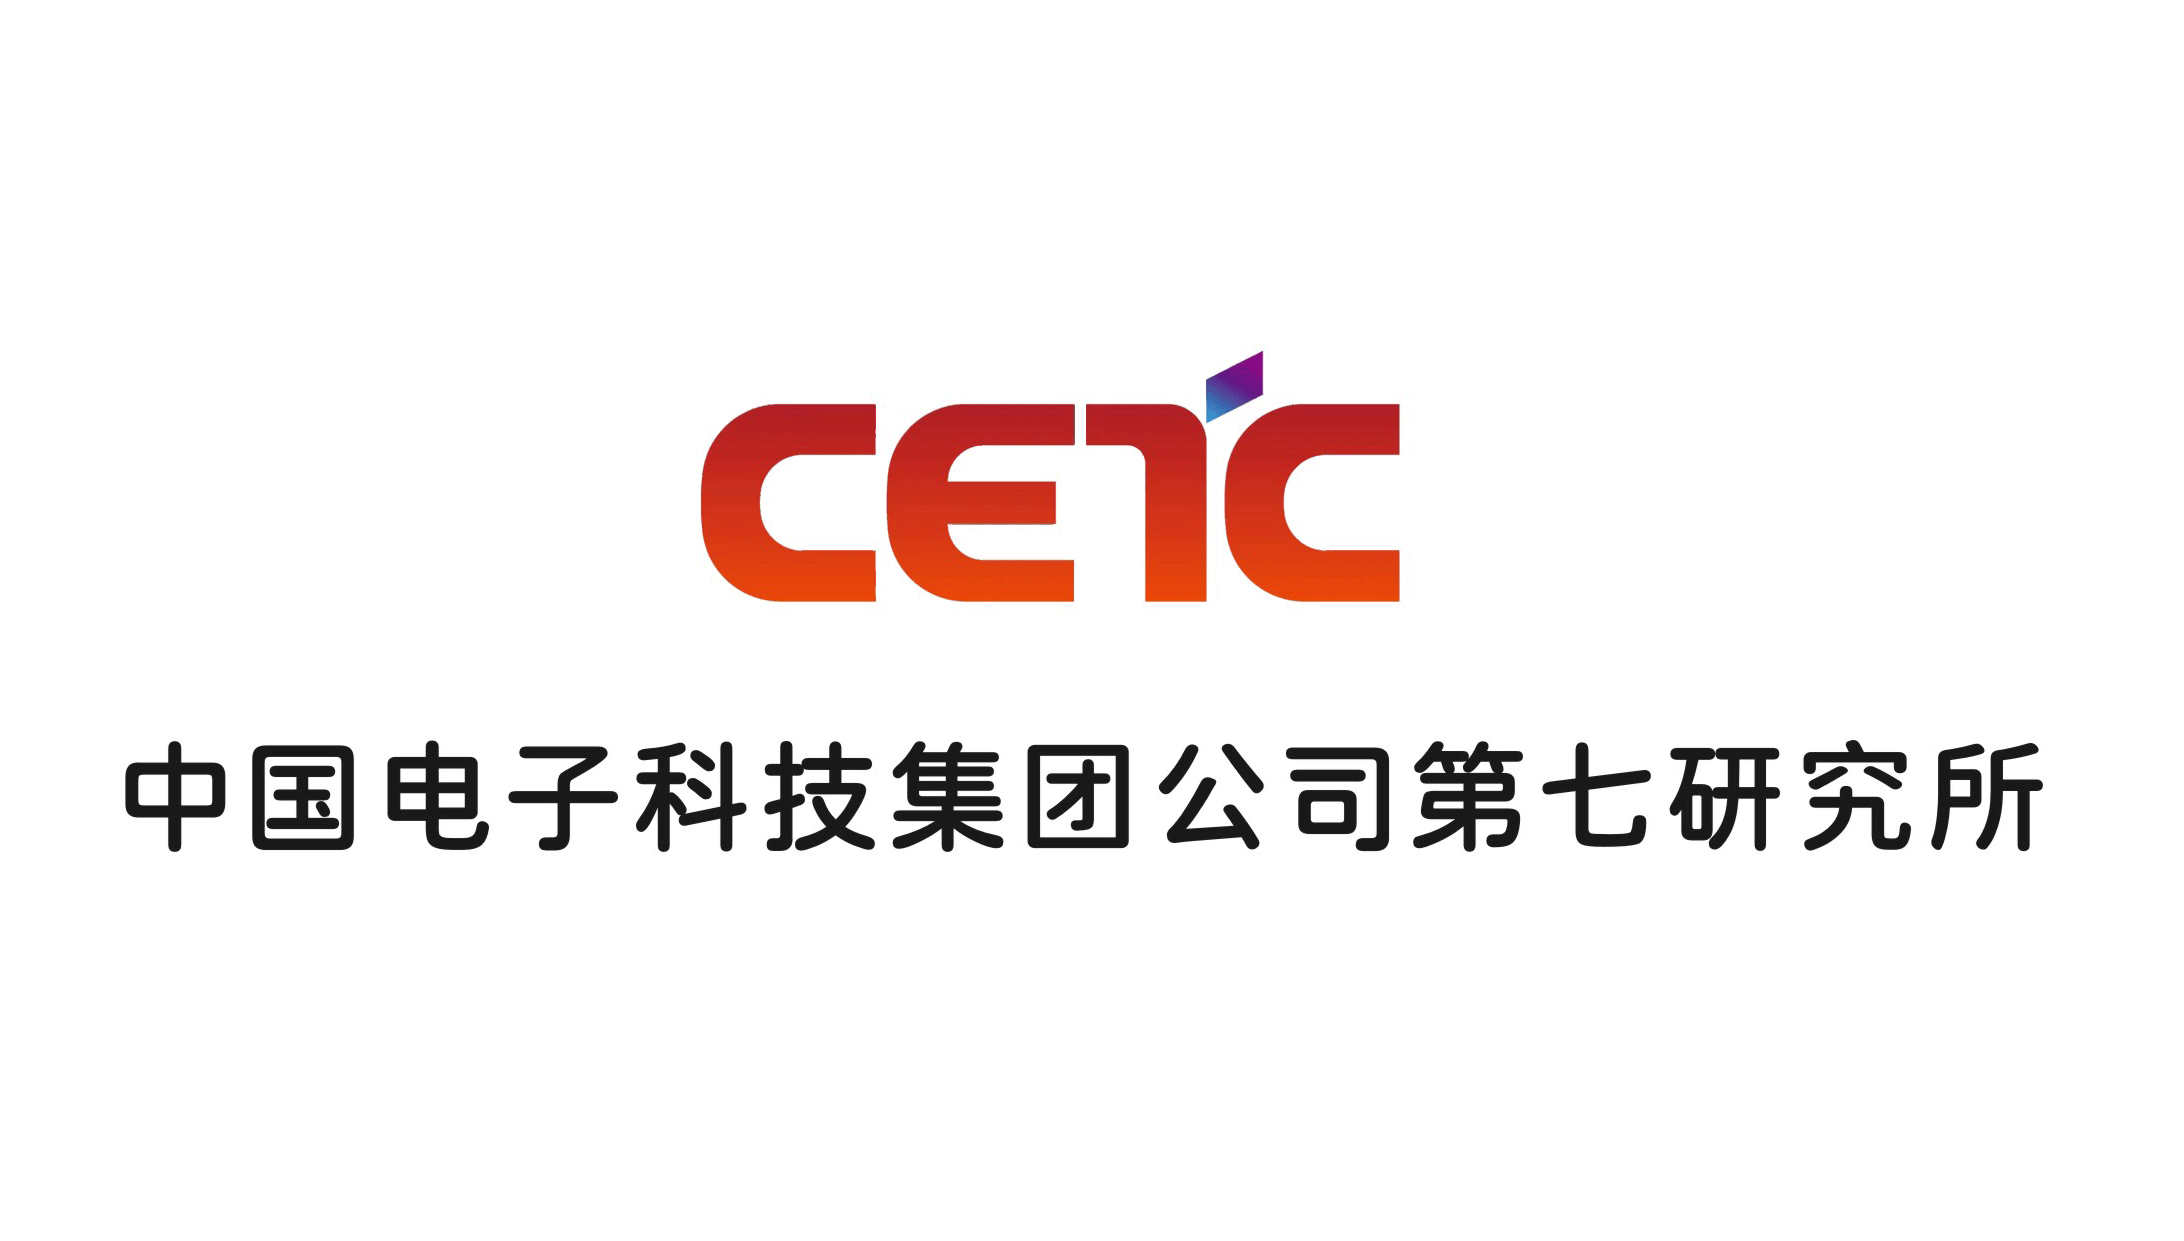 中国电子科技集团第七研究所